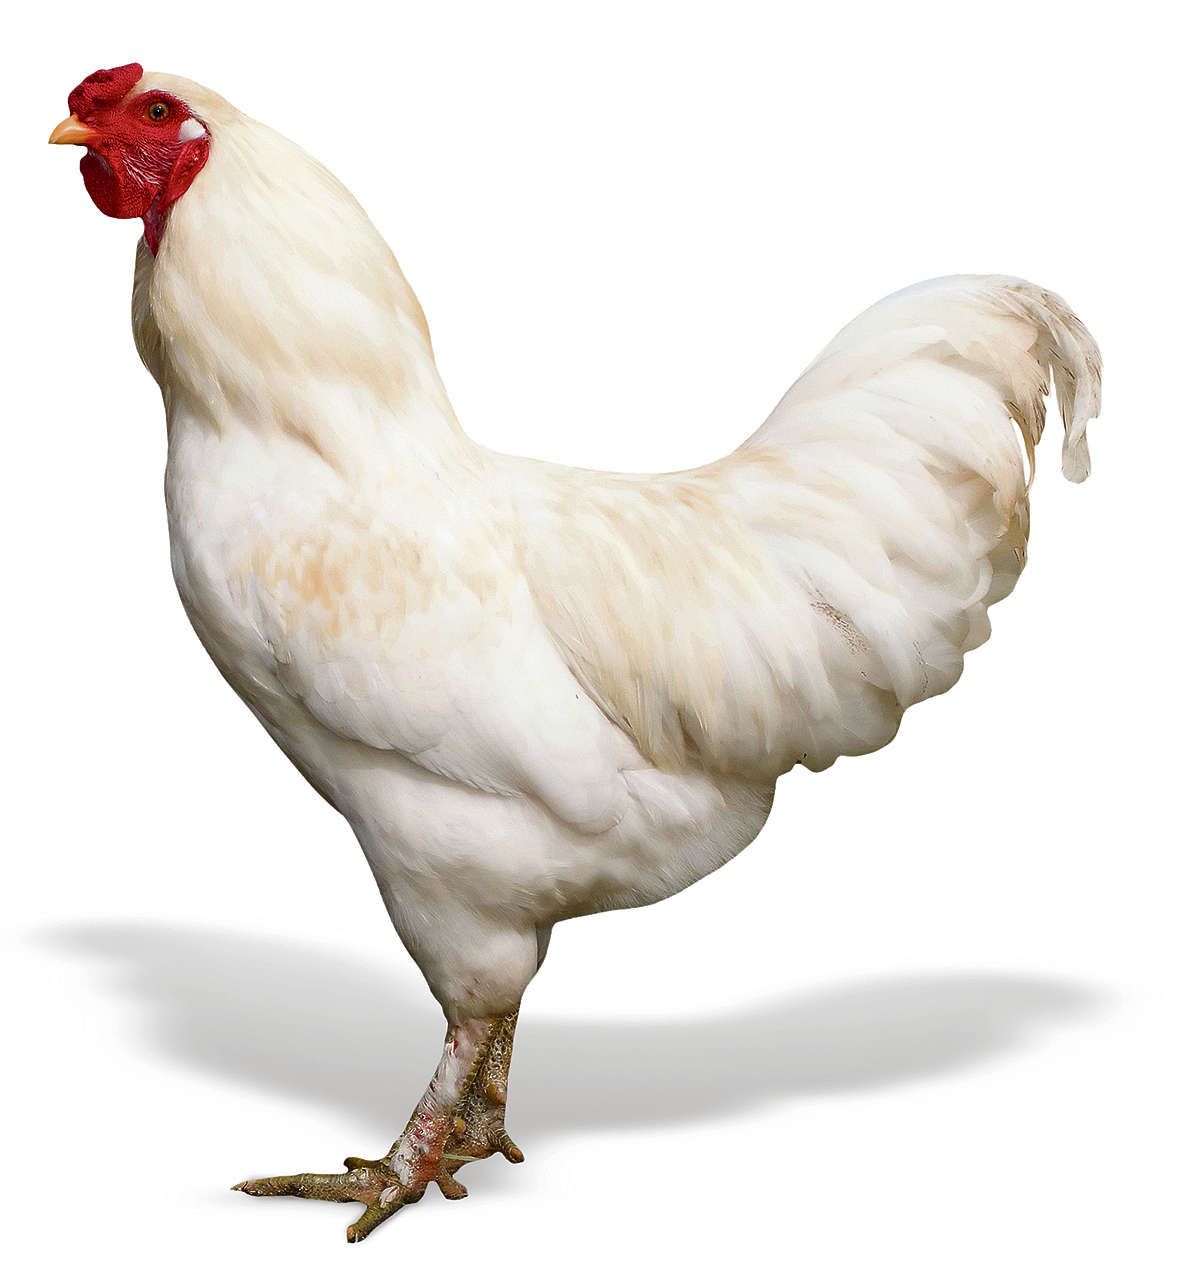 Reisbureau Misverstand Praten tegen Een kip van drie dagen ouder is nog geen duurzame kip - NRC